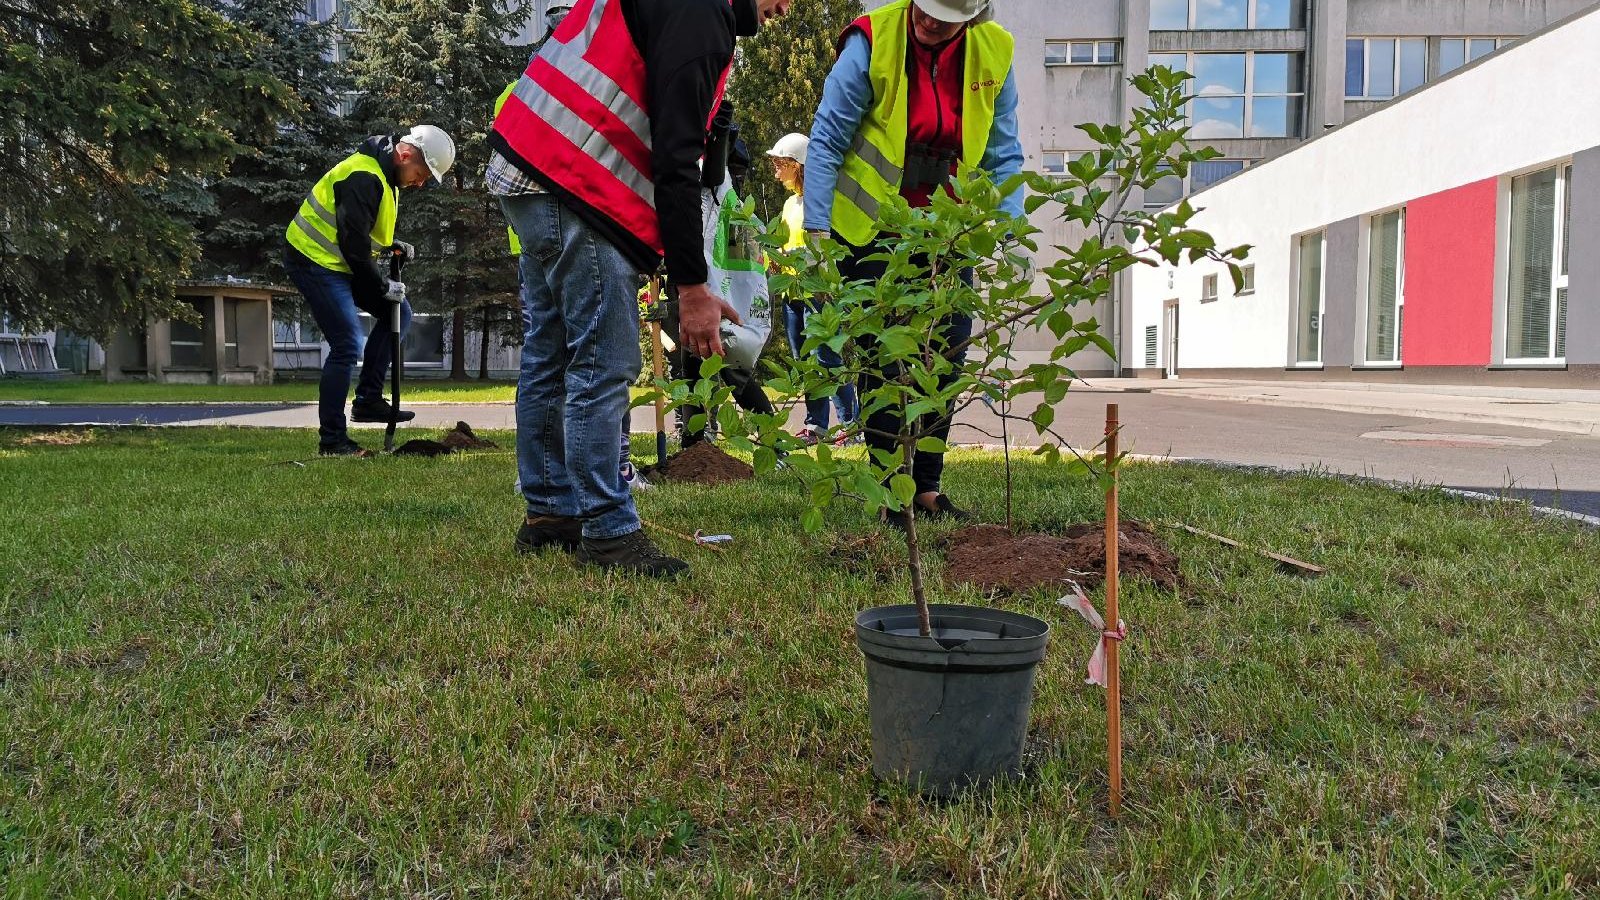 Dzięki akcji nasadzeń na terenach Veolii Energii Poznań przybyło 80 drzew iglastych, 15 liściastych oraz pole lucerny siewnej/ fot. Veolia Energia Poznań